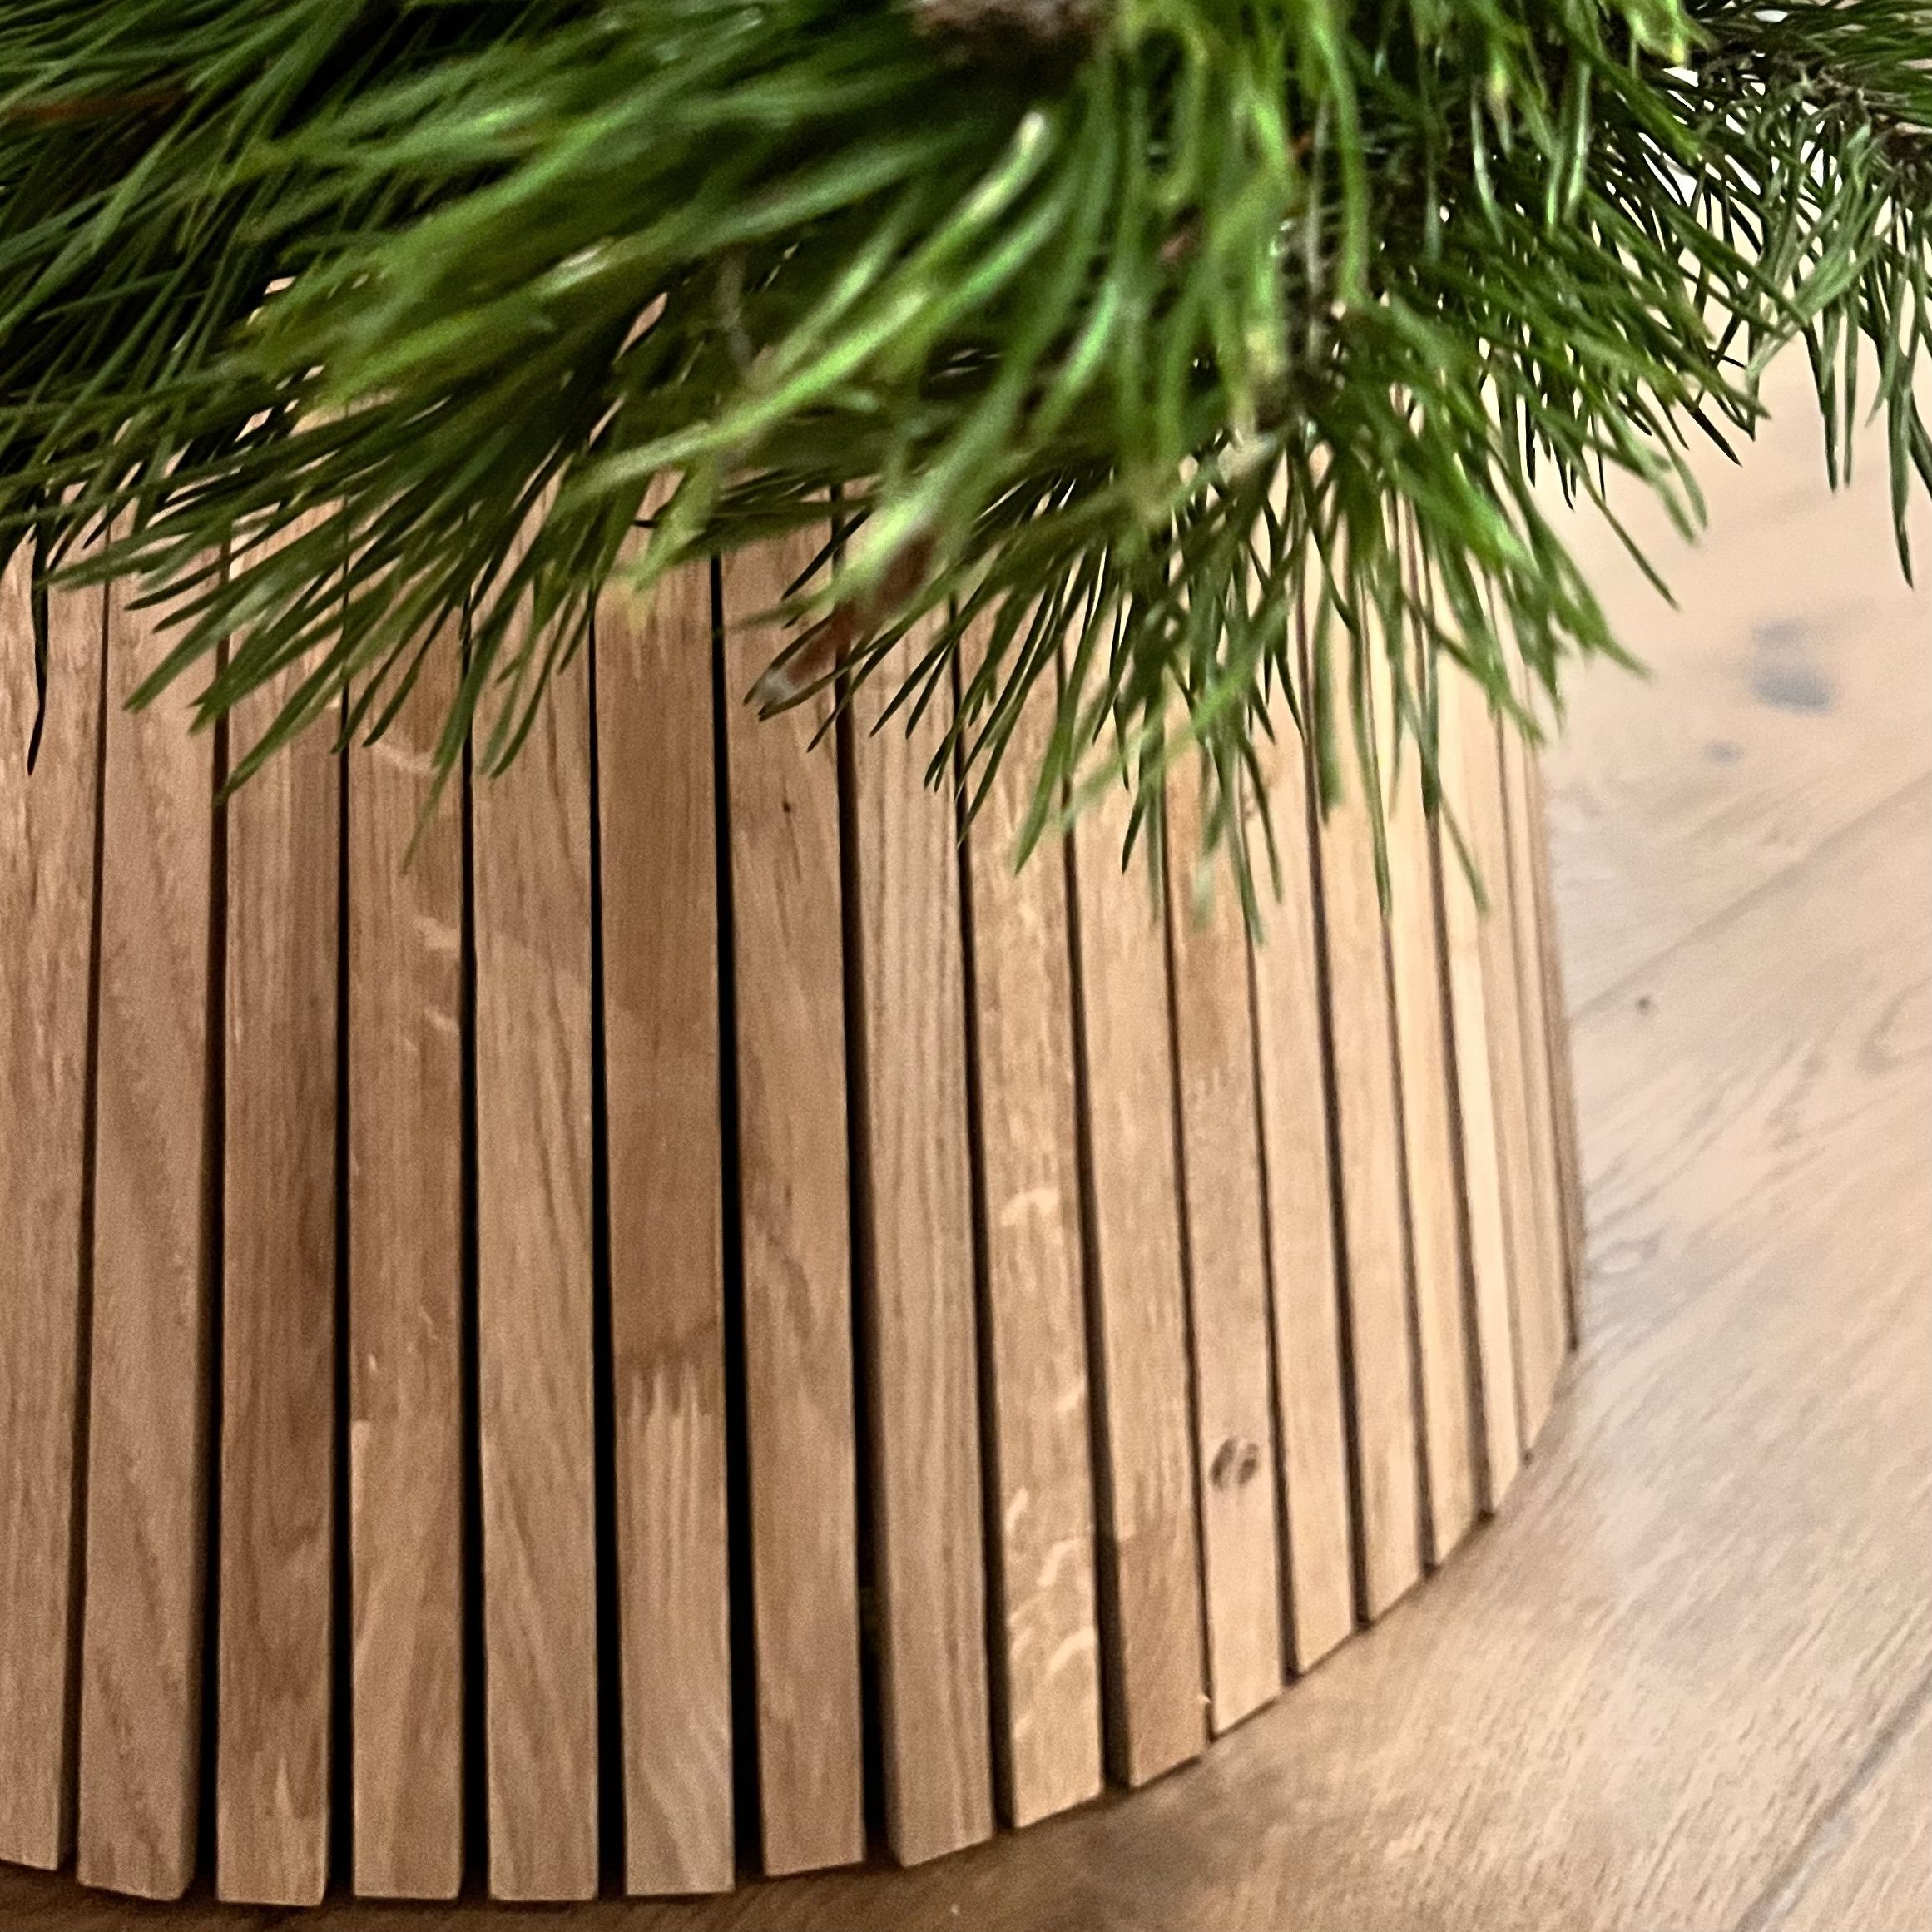 Как сделать подставку для елки? Пять решений главной новогодней проблемы